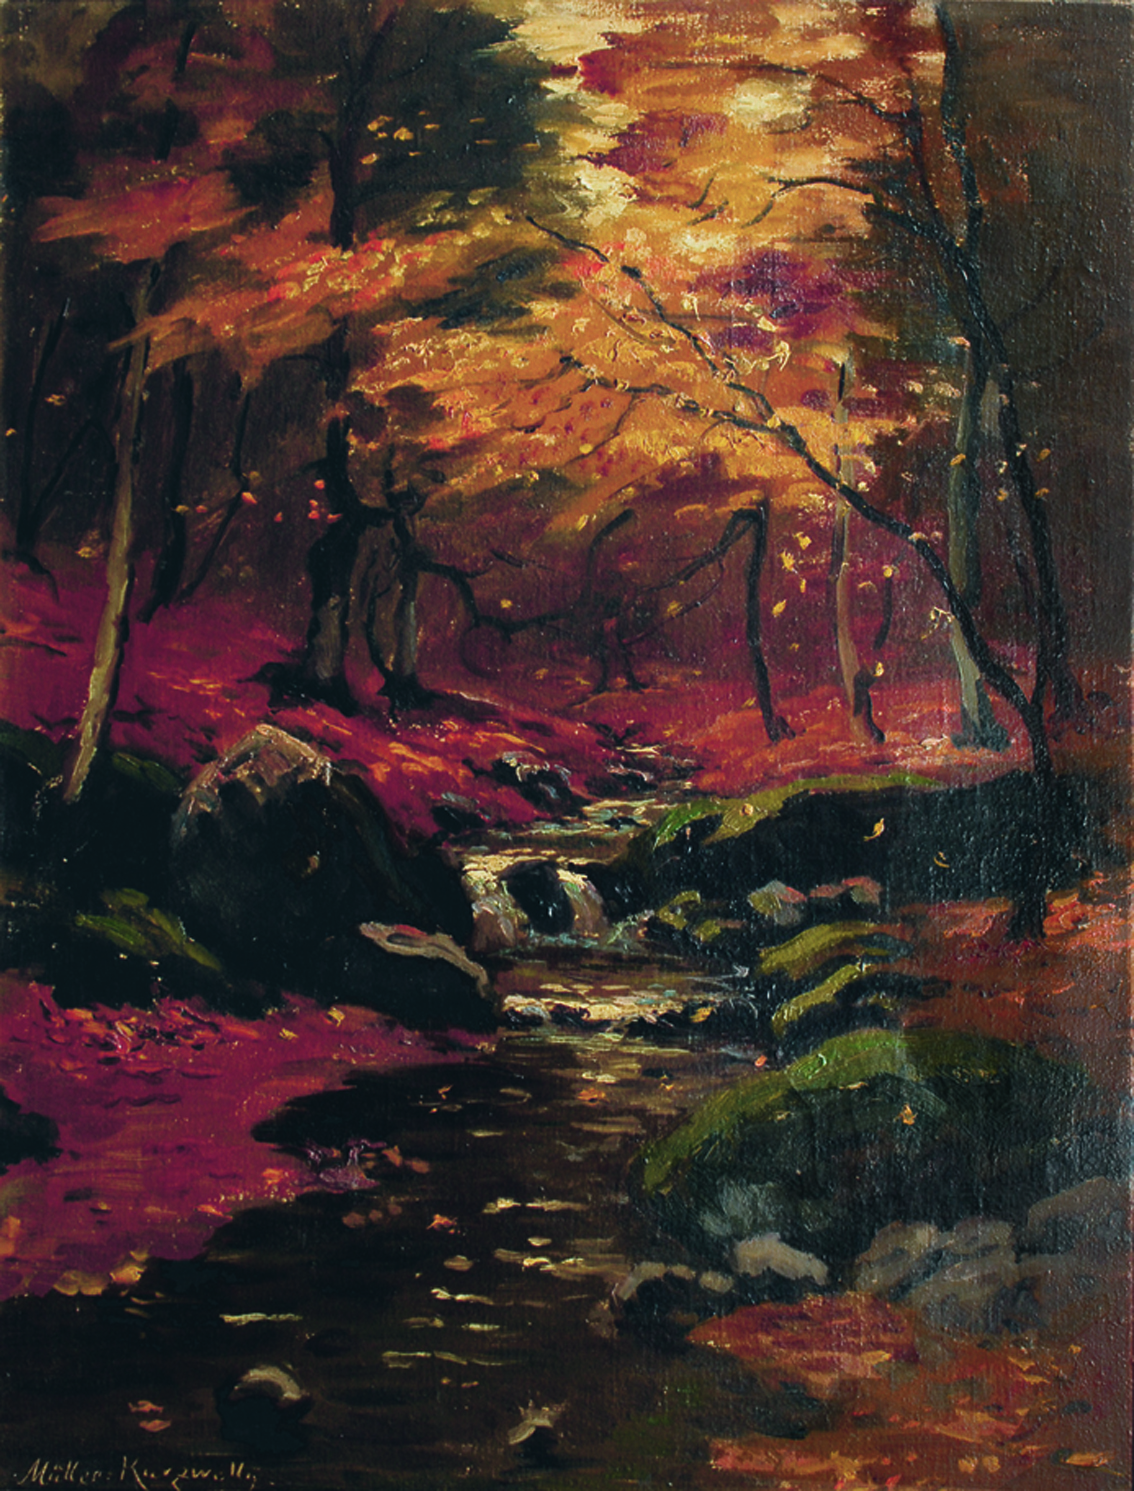 A stream in autumn